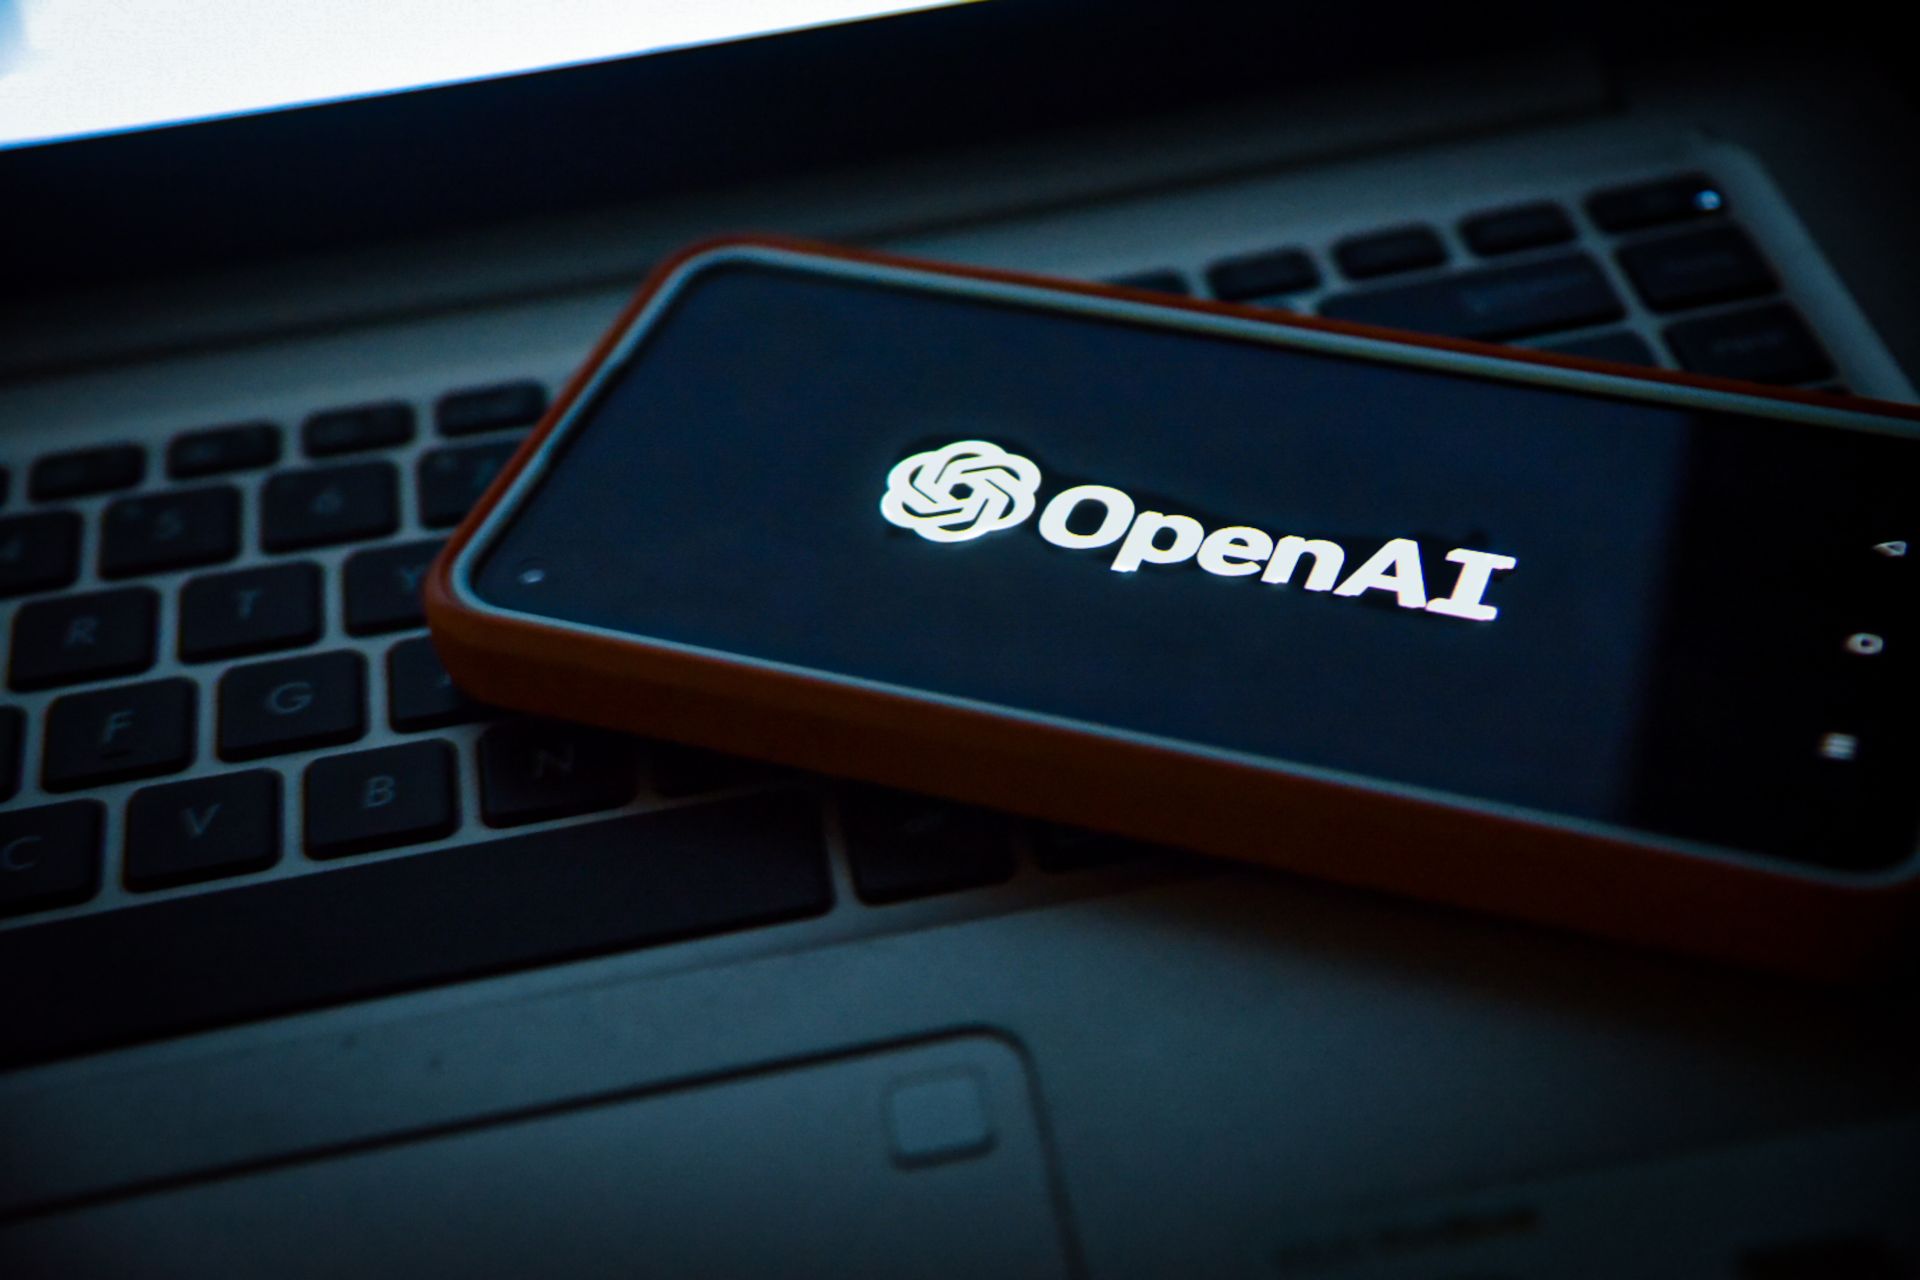 OpenAI DevDay